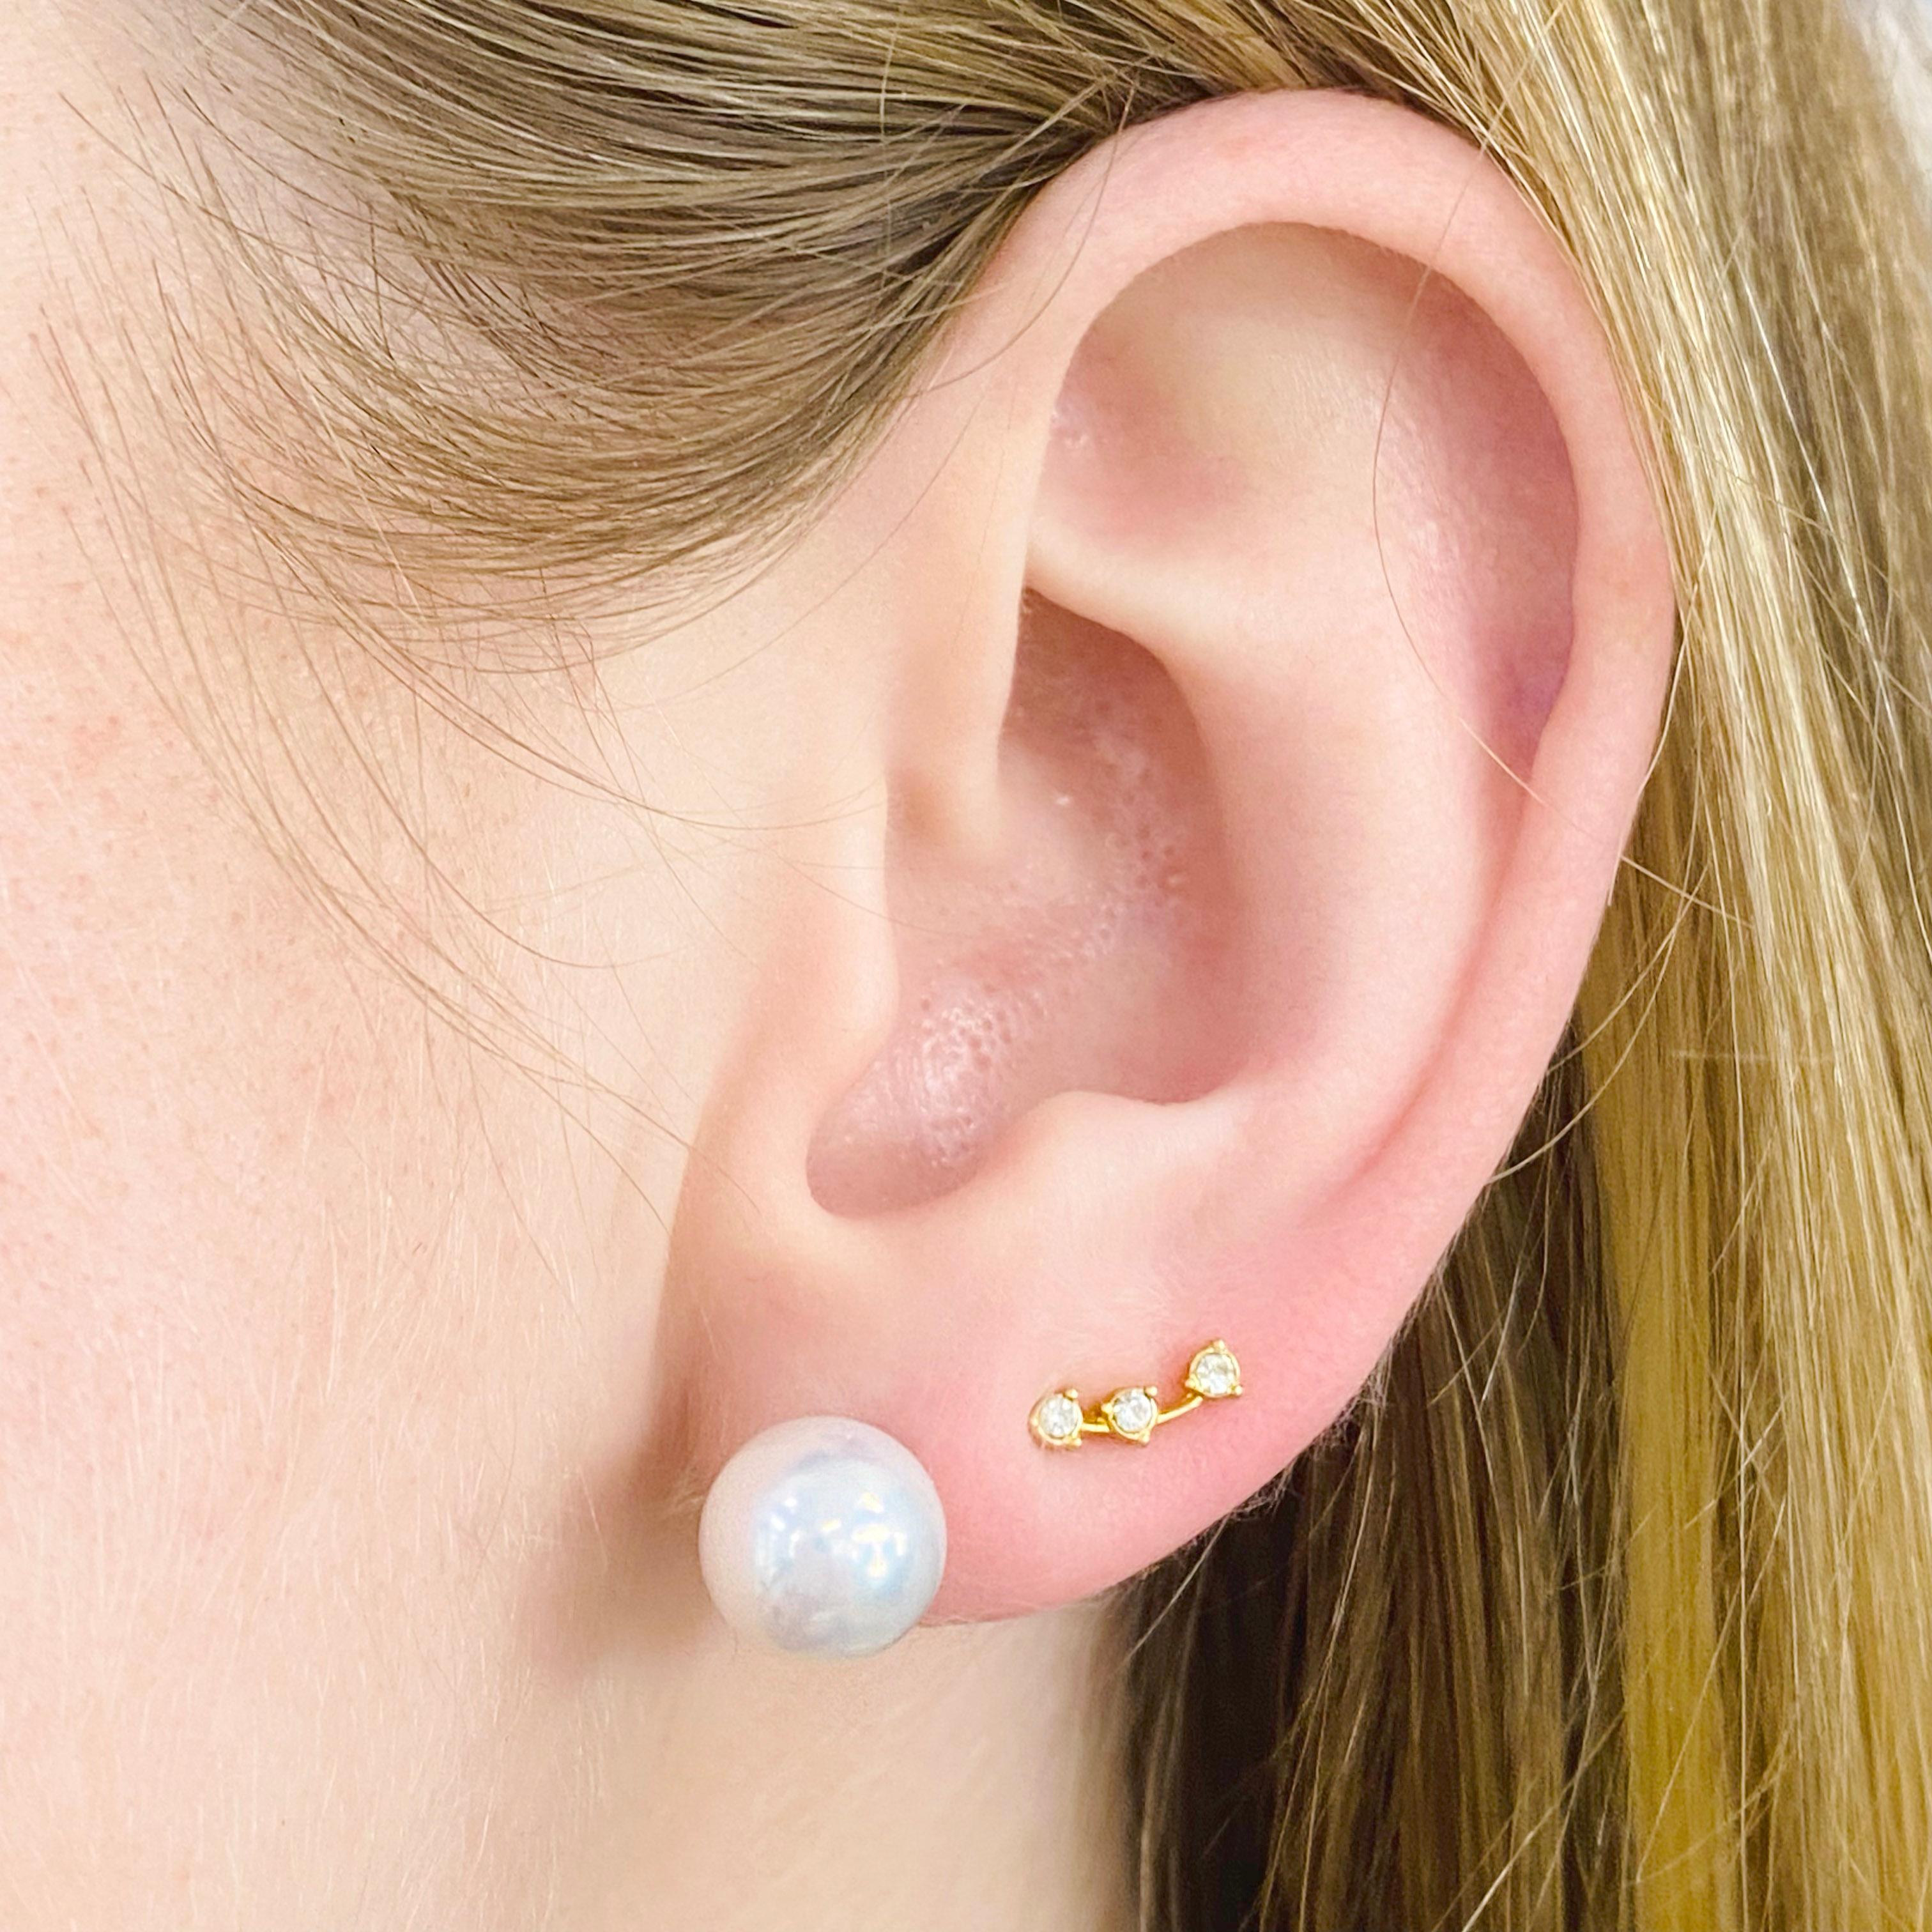 Ces boucles d'oreilles en perles Akoya du Japon de 10 millimètres sont éblouissantes. La couleur est si blanche qu'elle est presque argentée. Ils sont parfaitement assortis et d'excellente qualité. Les détails de ces superbes boucles d'oreilles sont